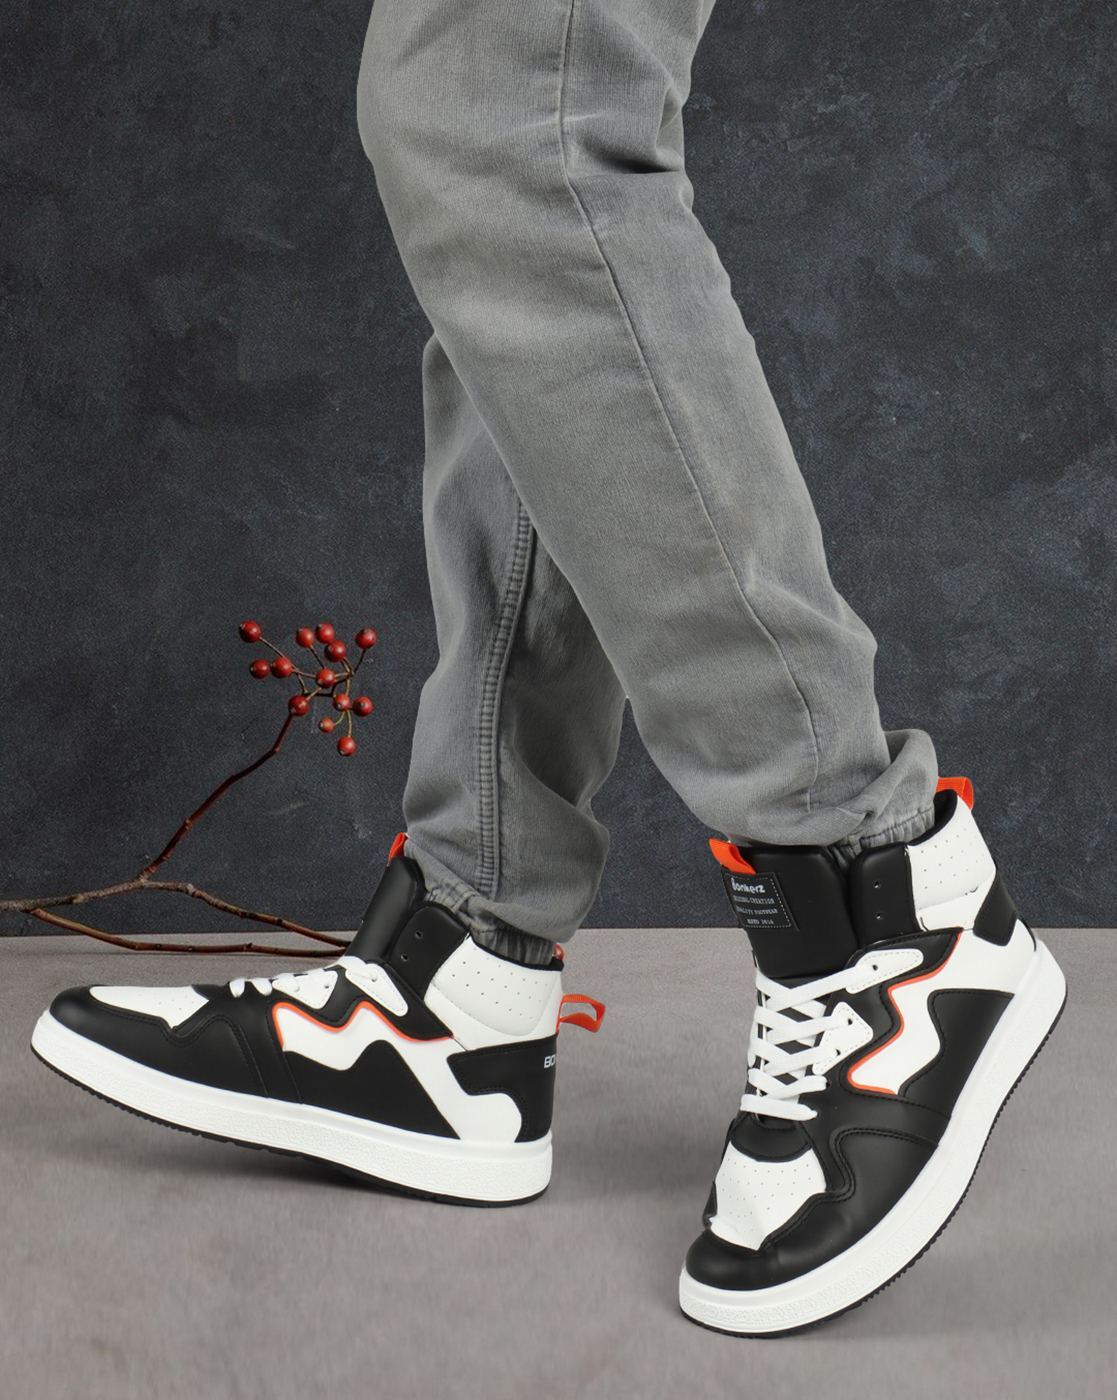 Buy White Sneakers for Men by BONKERZ Online